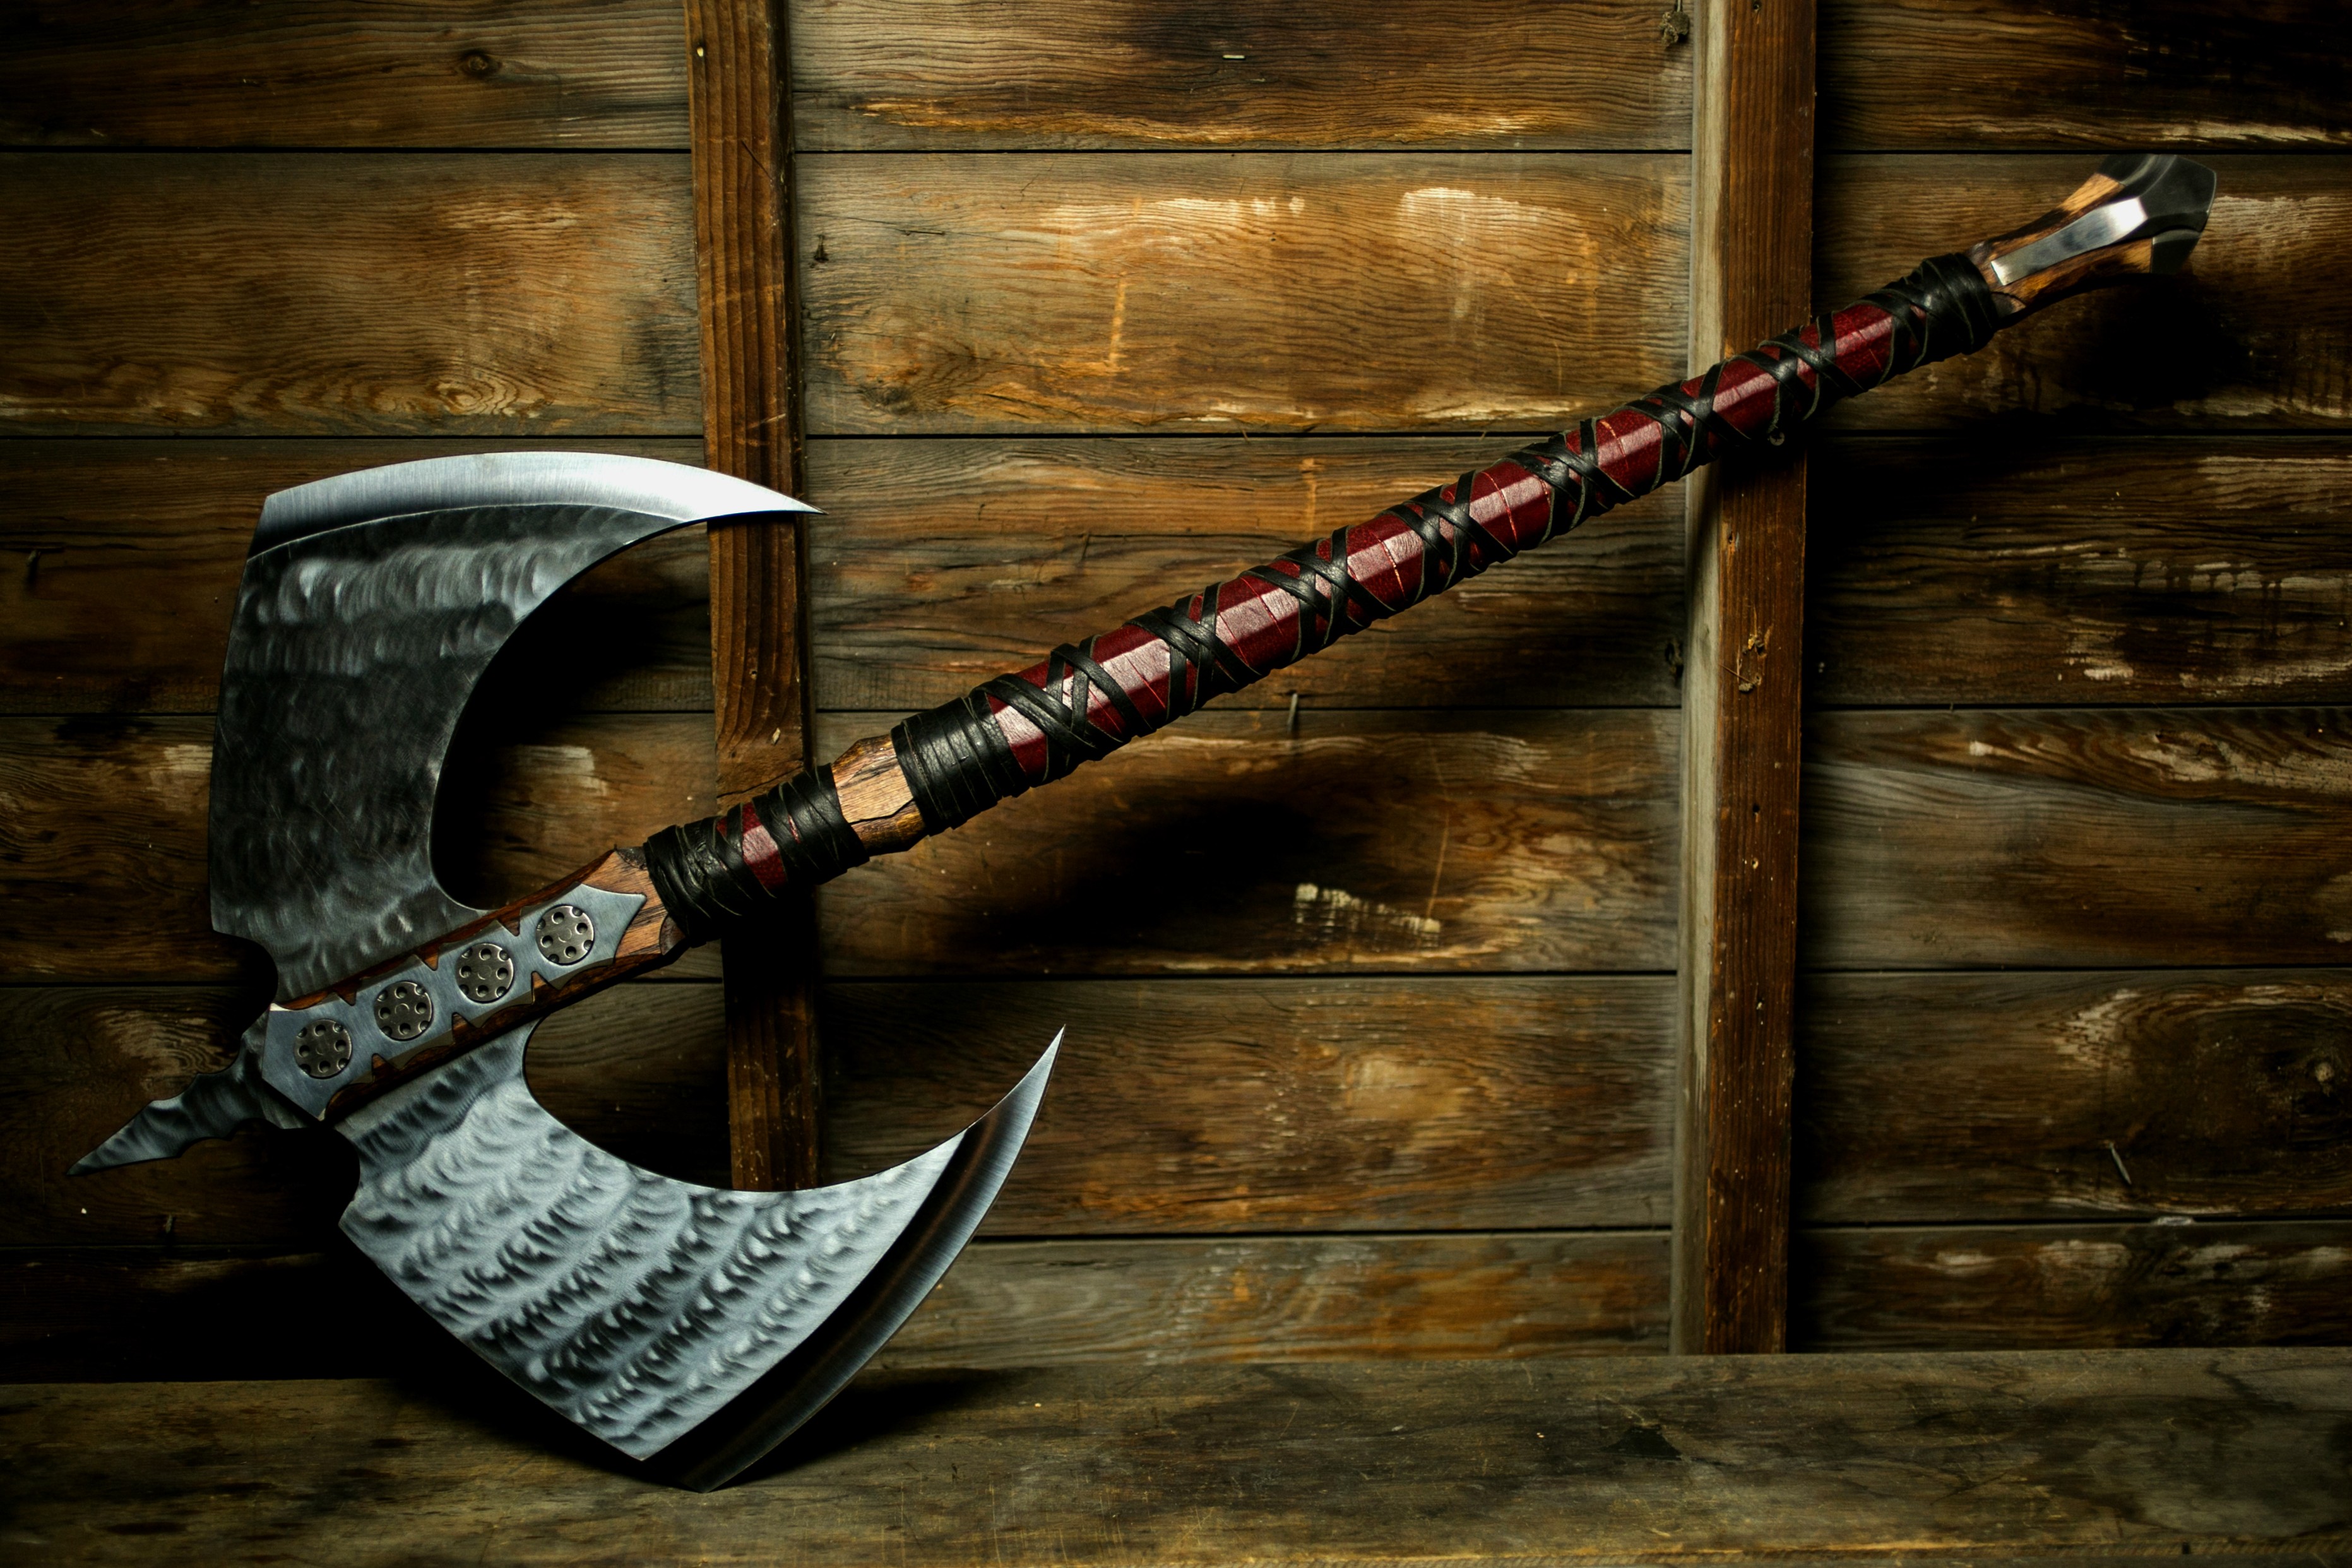 General 3726x2484 axes weapon metal wood digital art